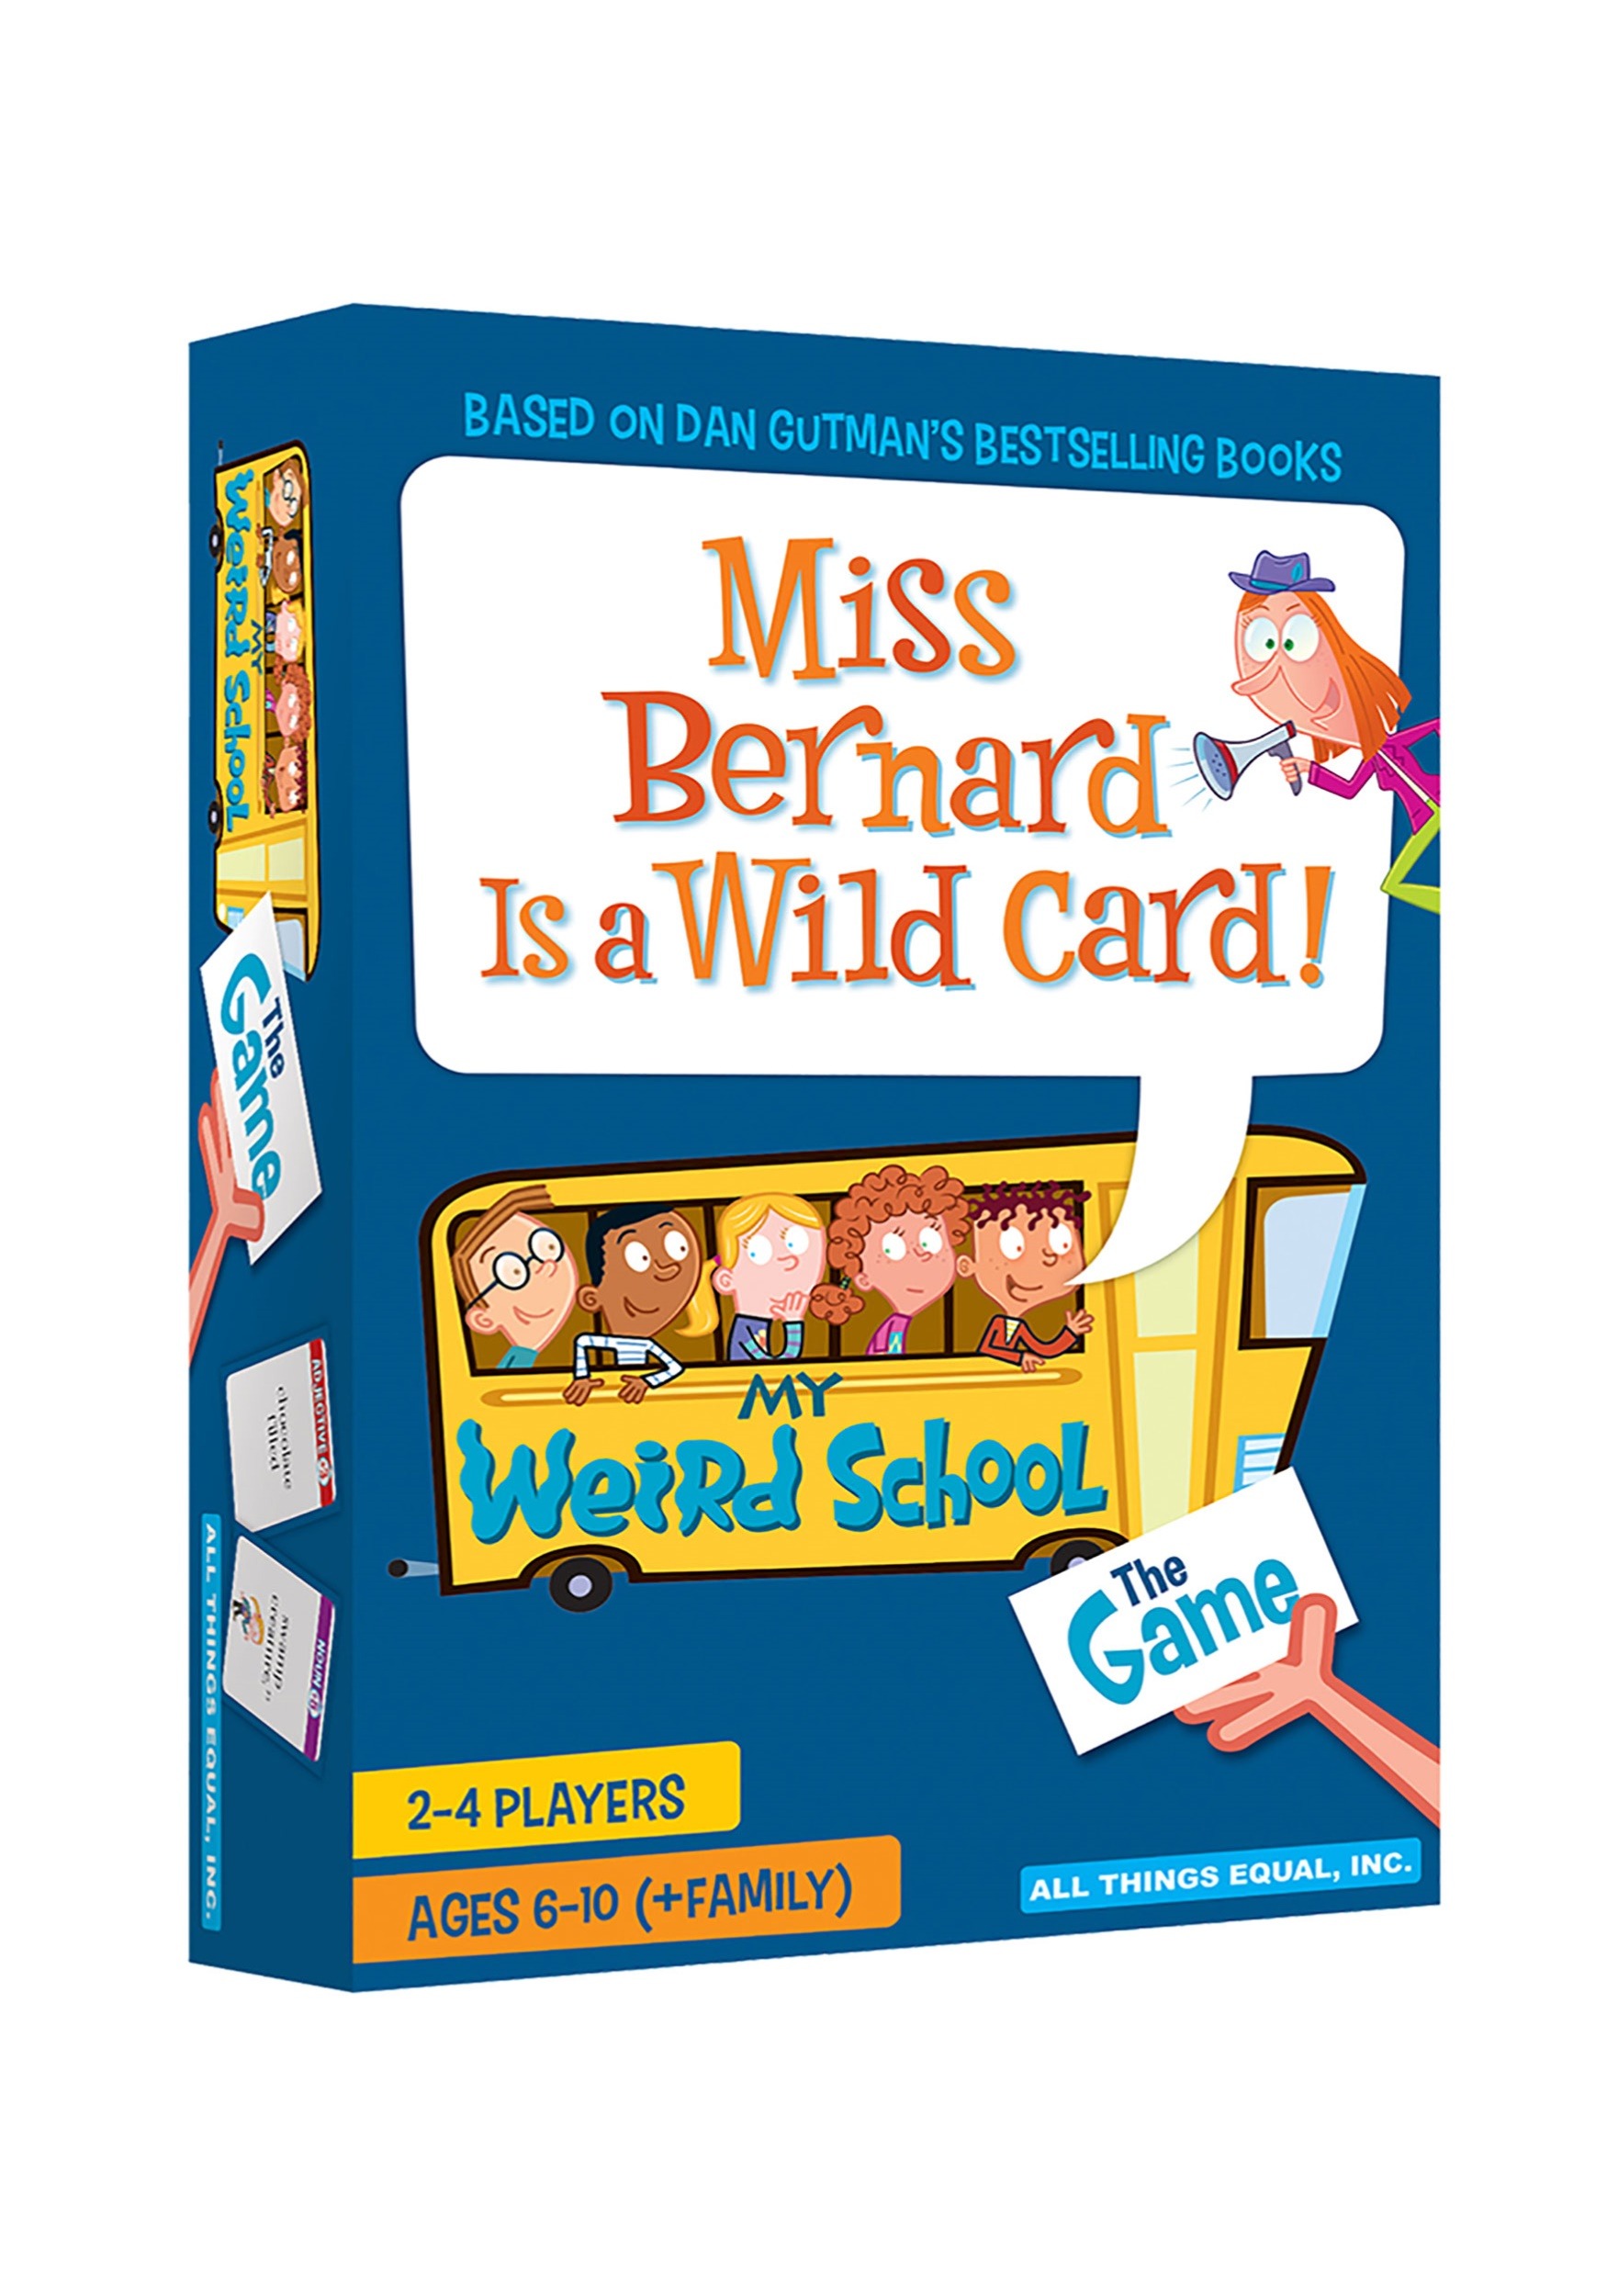 The My Weird School Game- Miss Bernard is a Wild Card